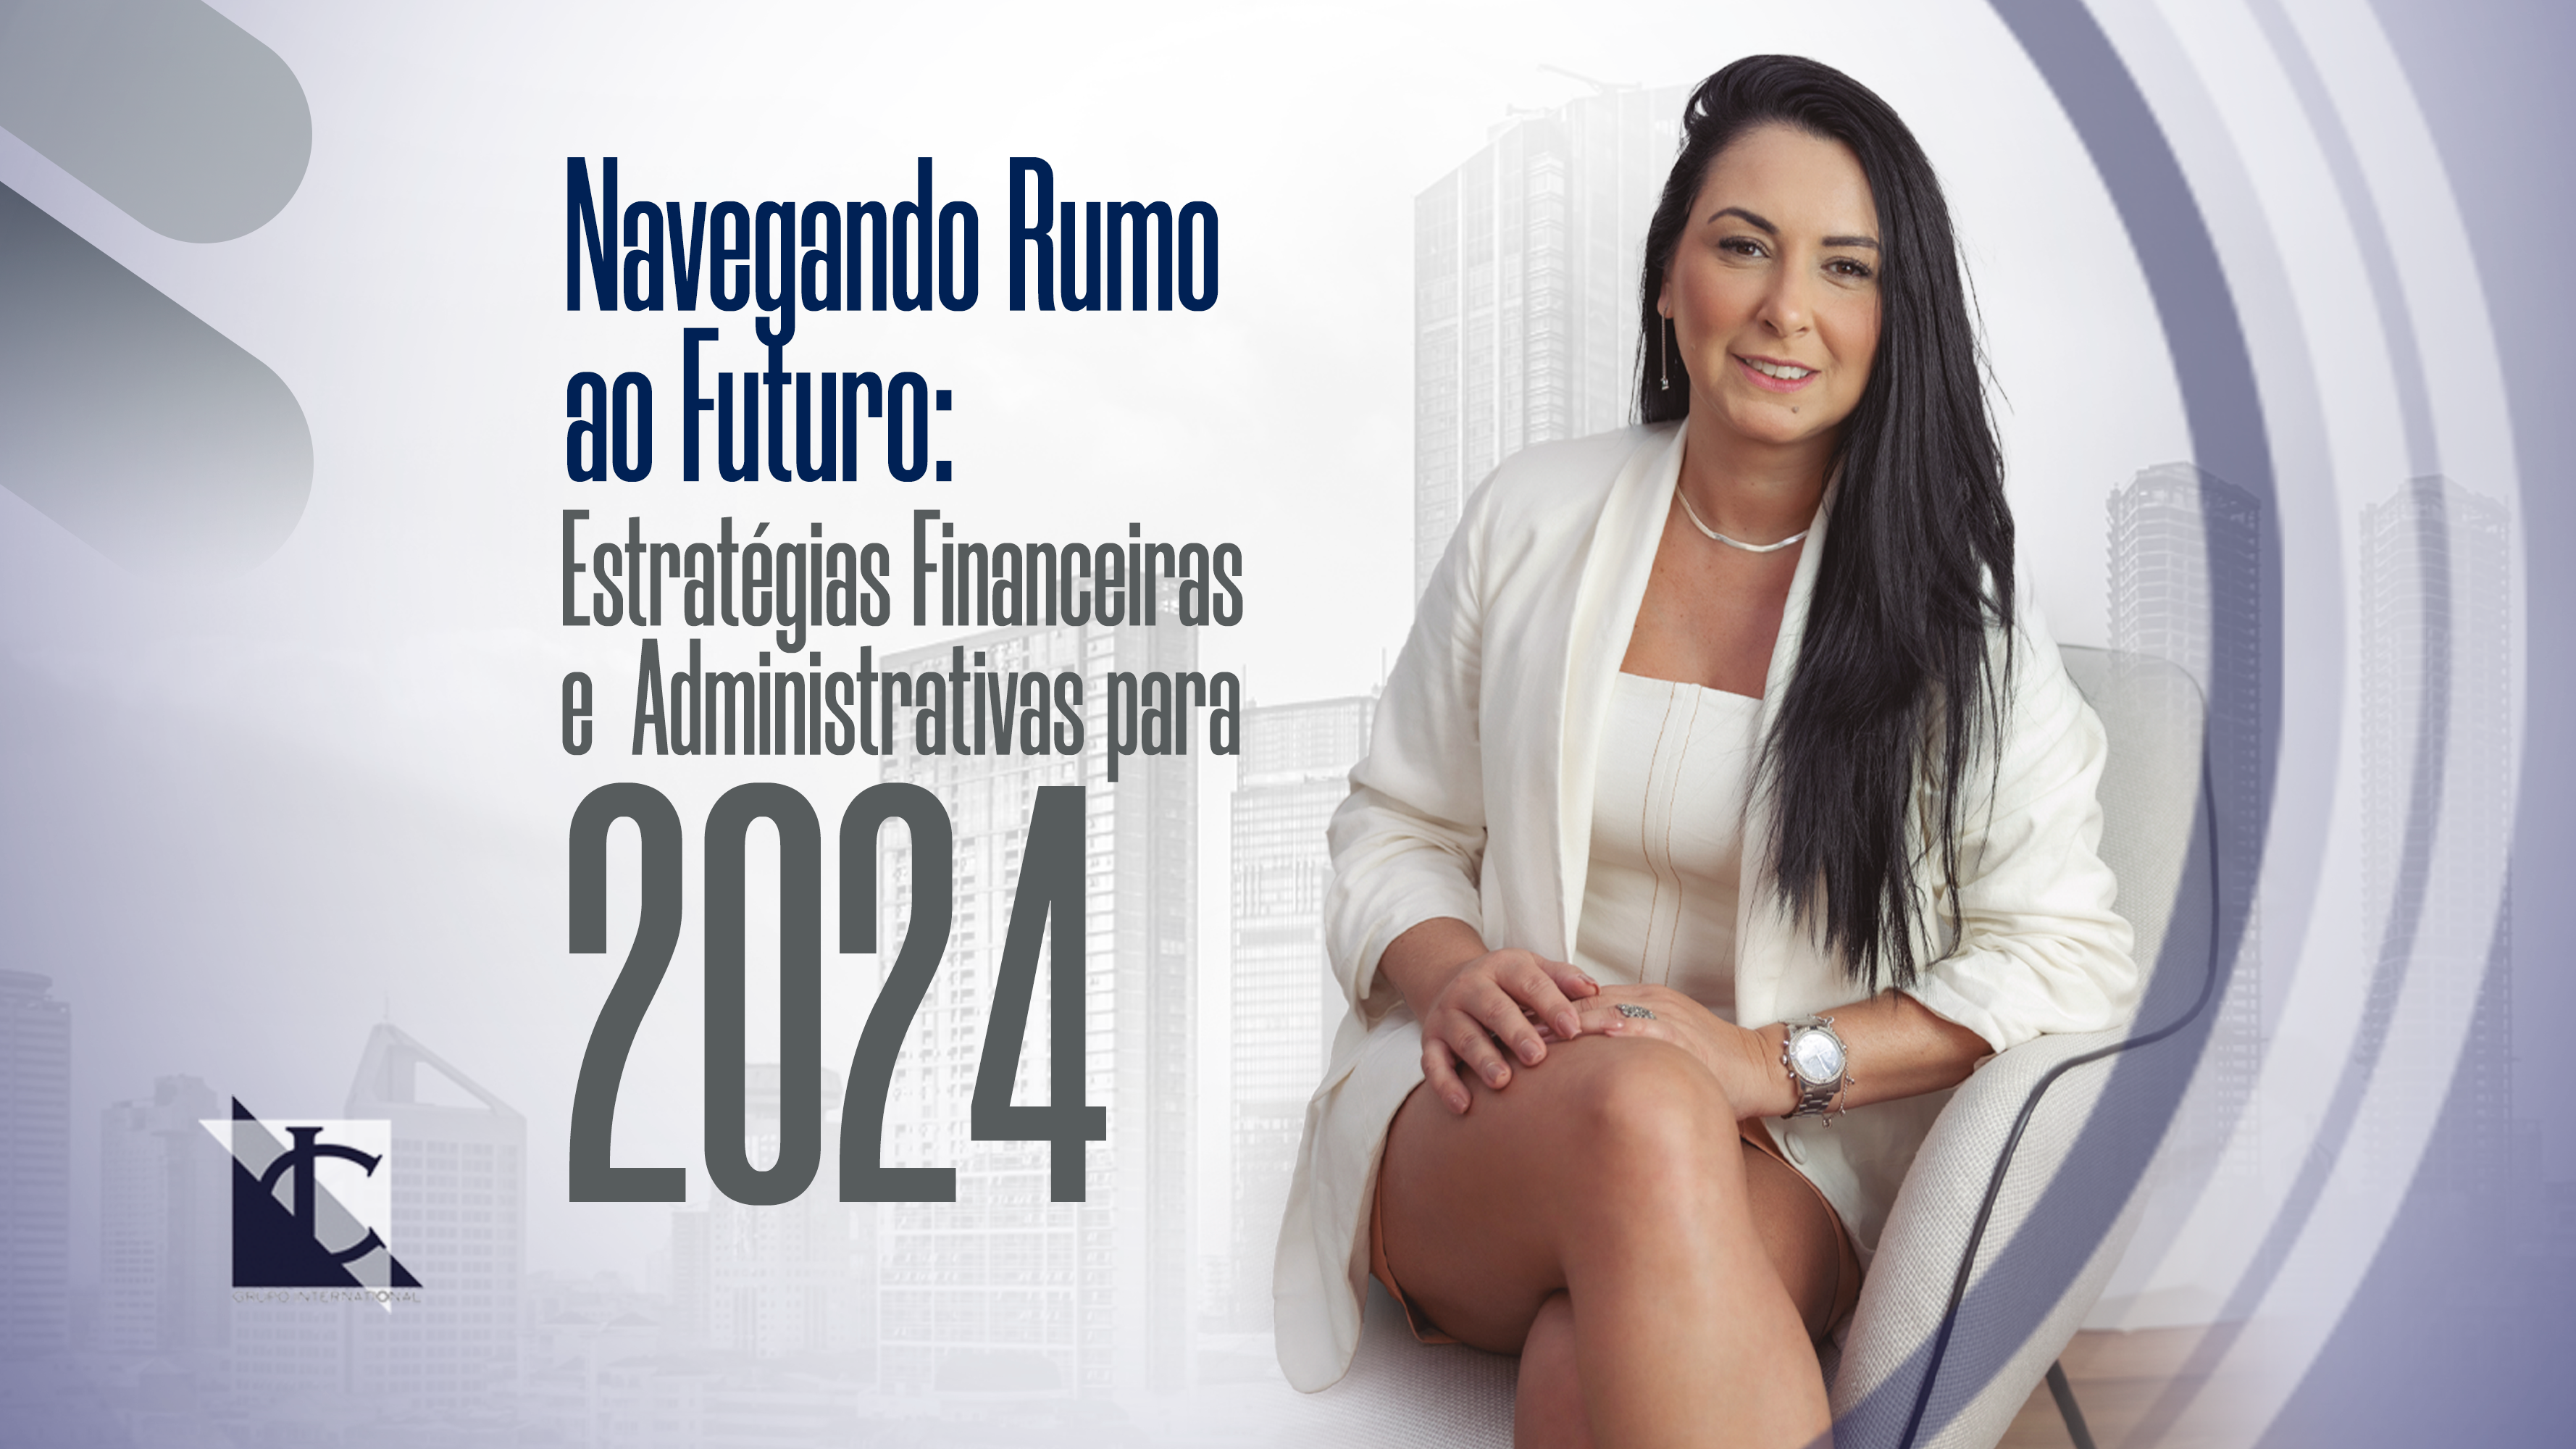 Está viendo Navegando hacia el futuro: estrategias financieras y administrativas para 2024